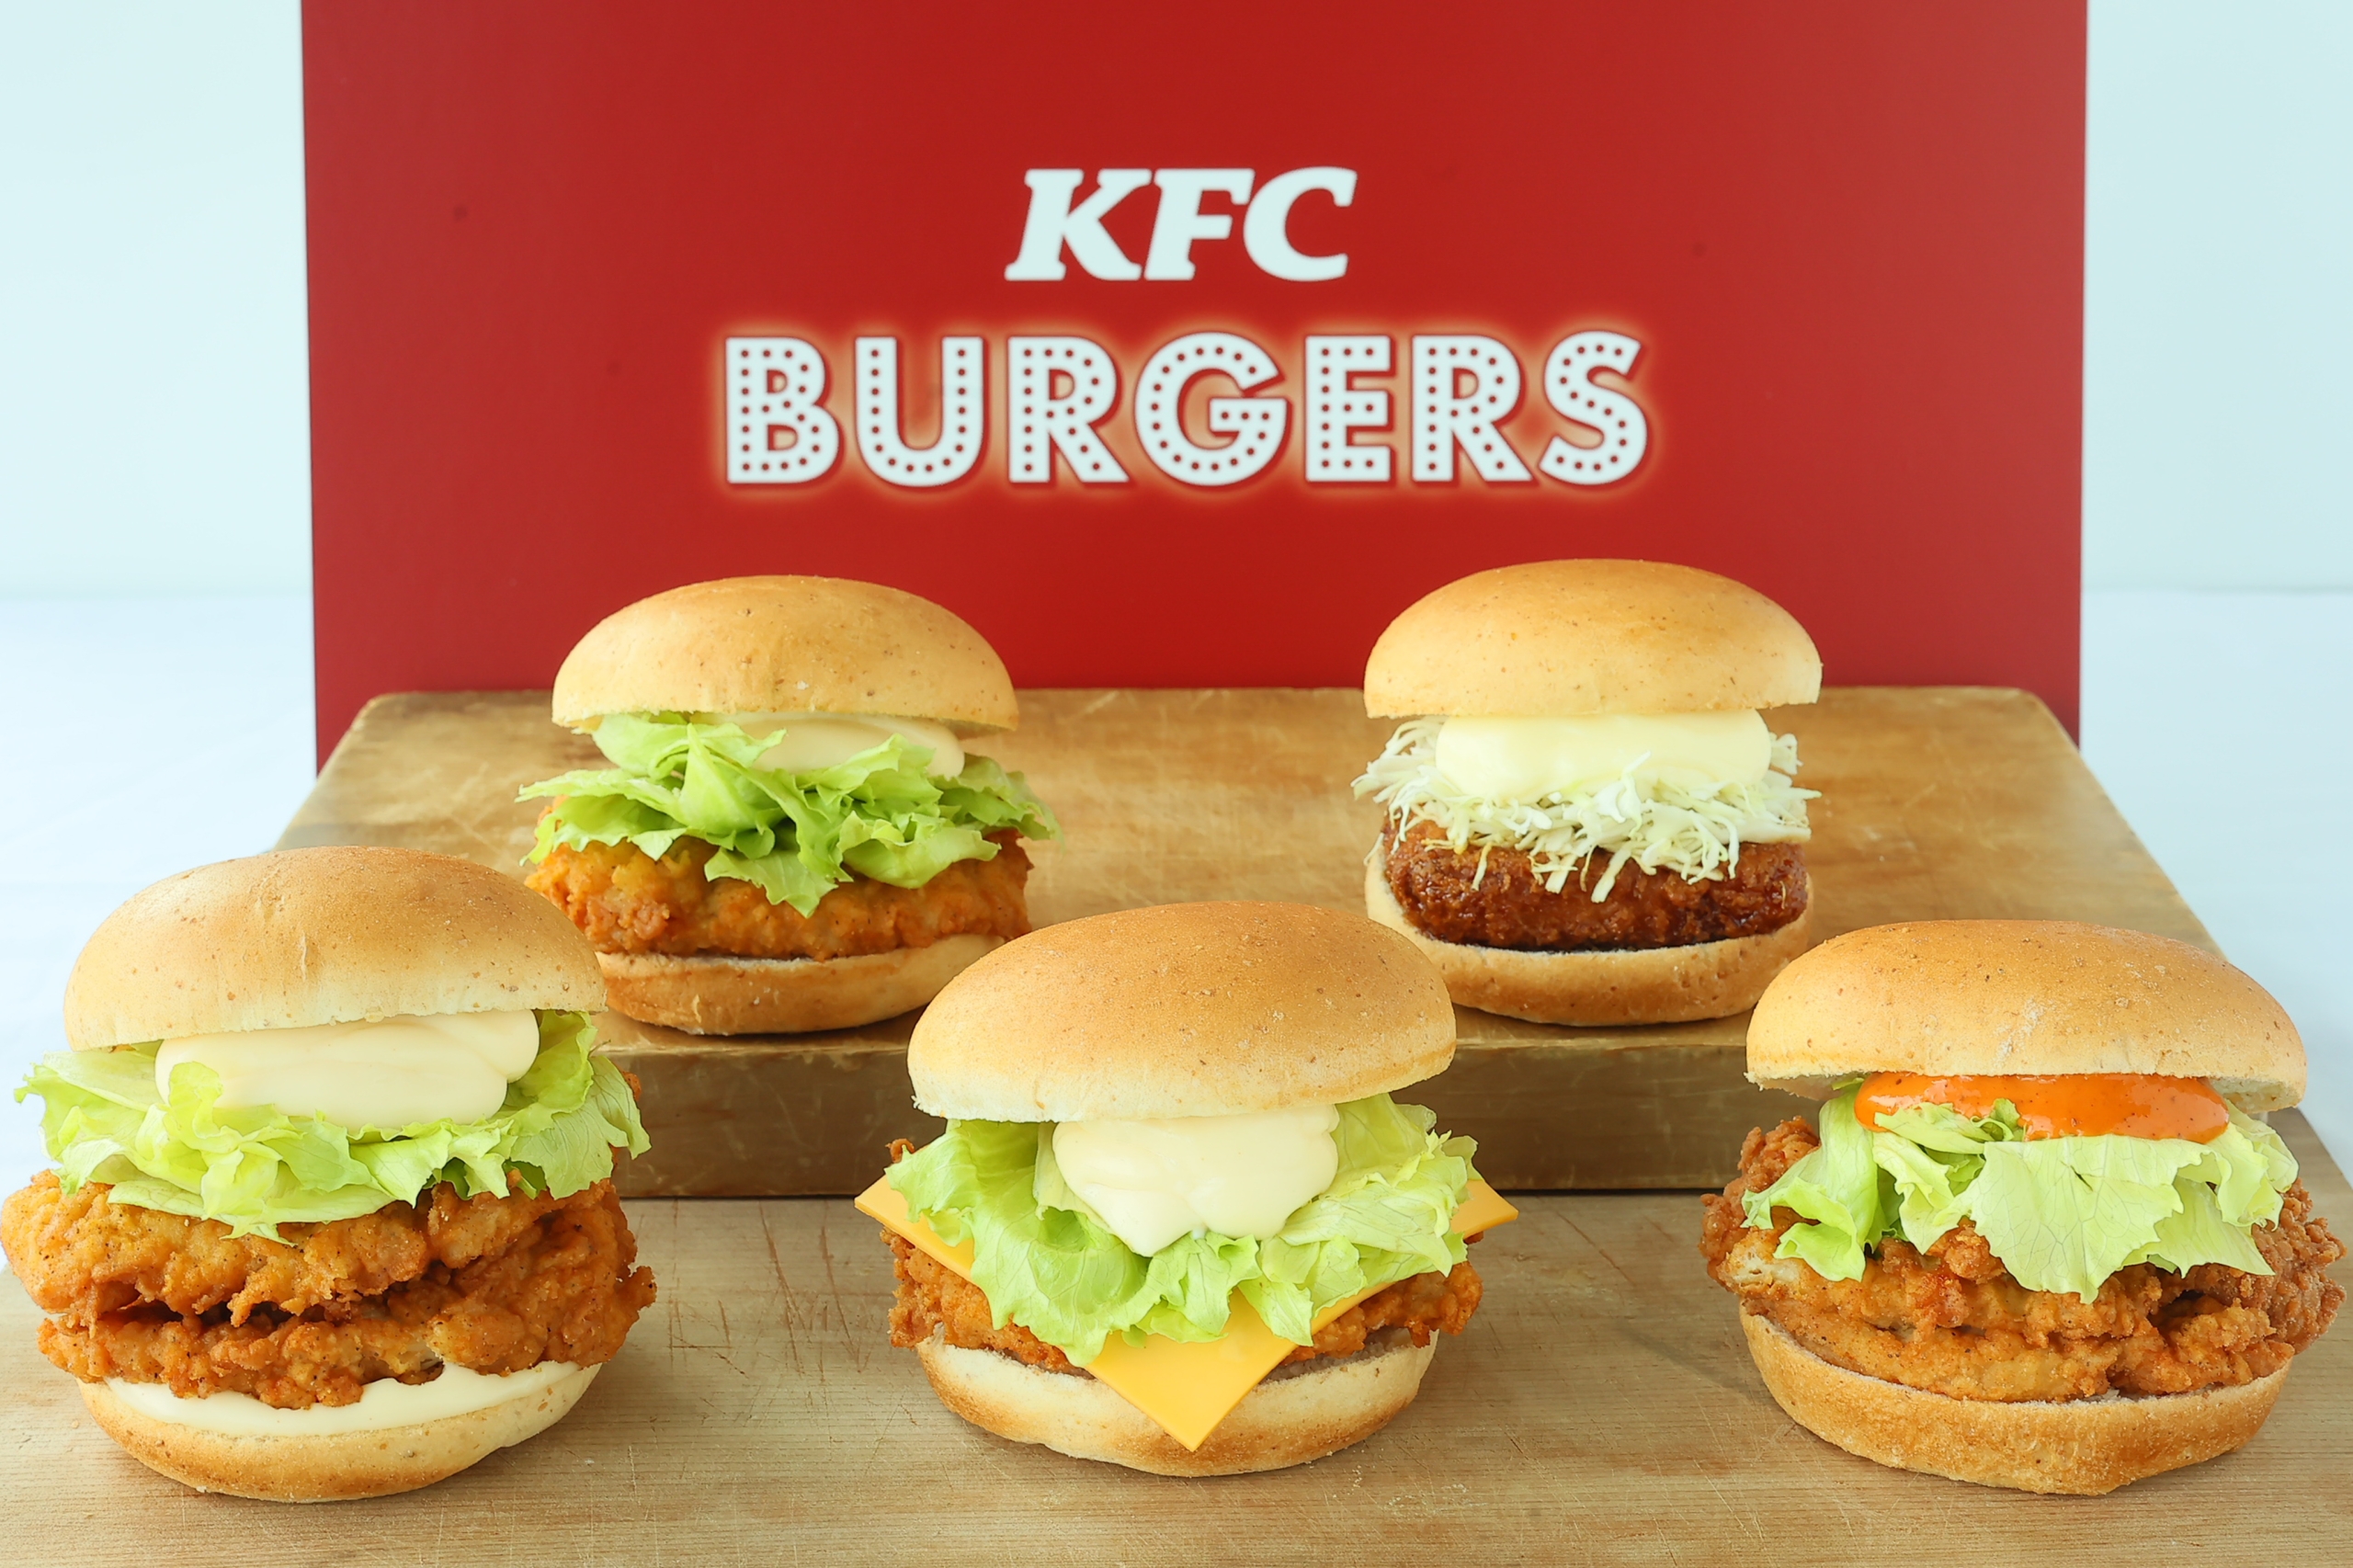 「チキンフィレバーガー」など5種類/日本KFC